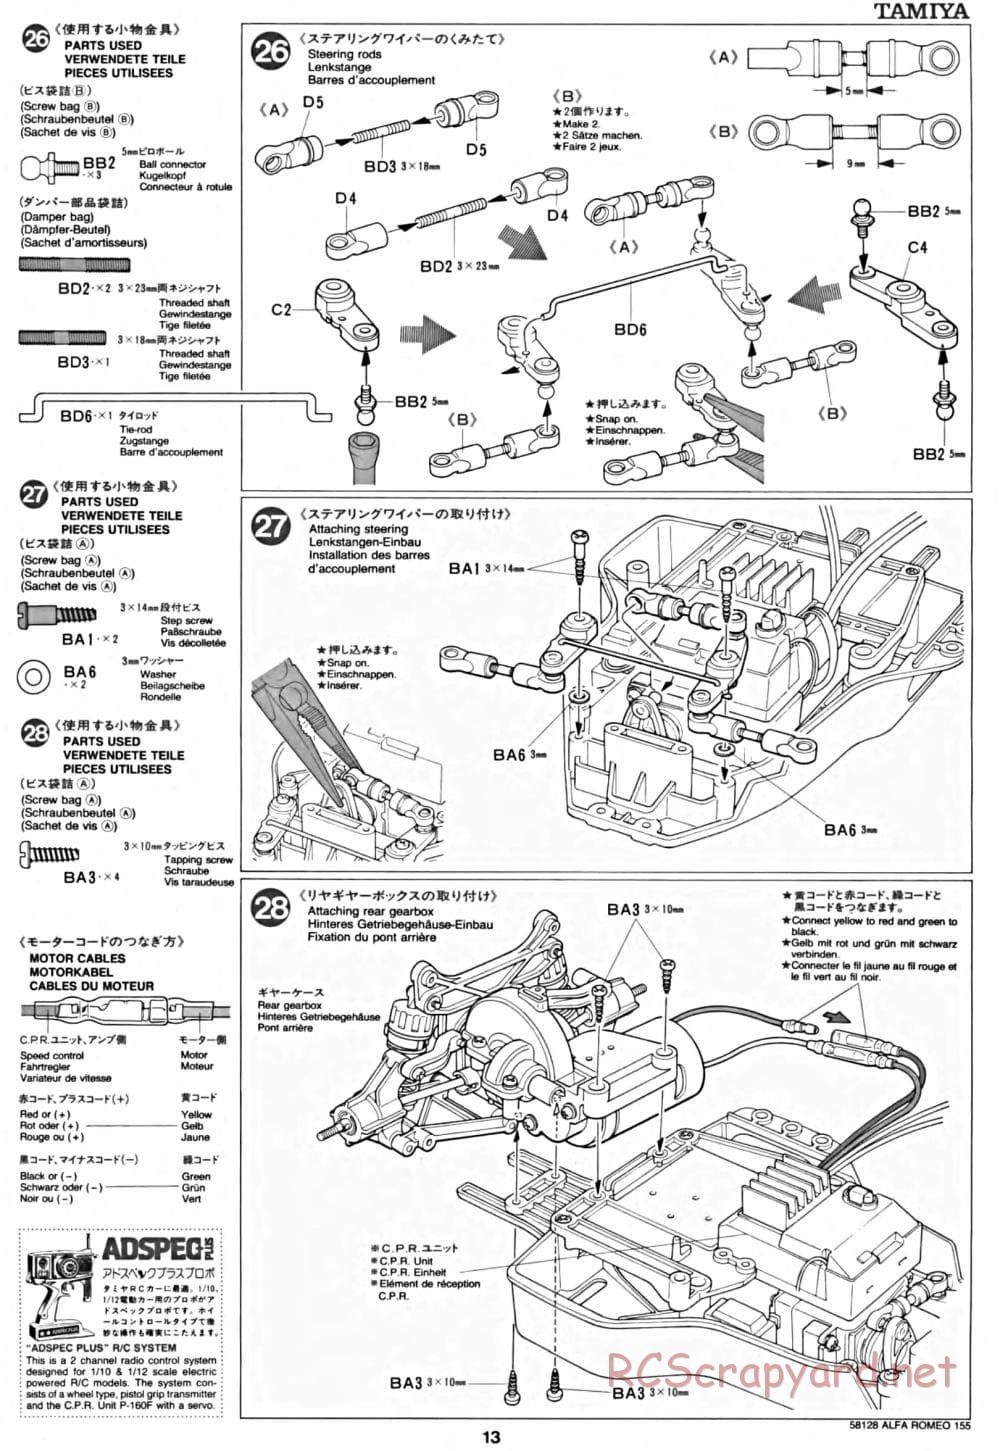 Tamiya - Alfa Romeo 155 V6 TI - TA-02 Chassis - Manual - Page 13